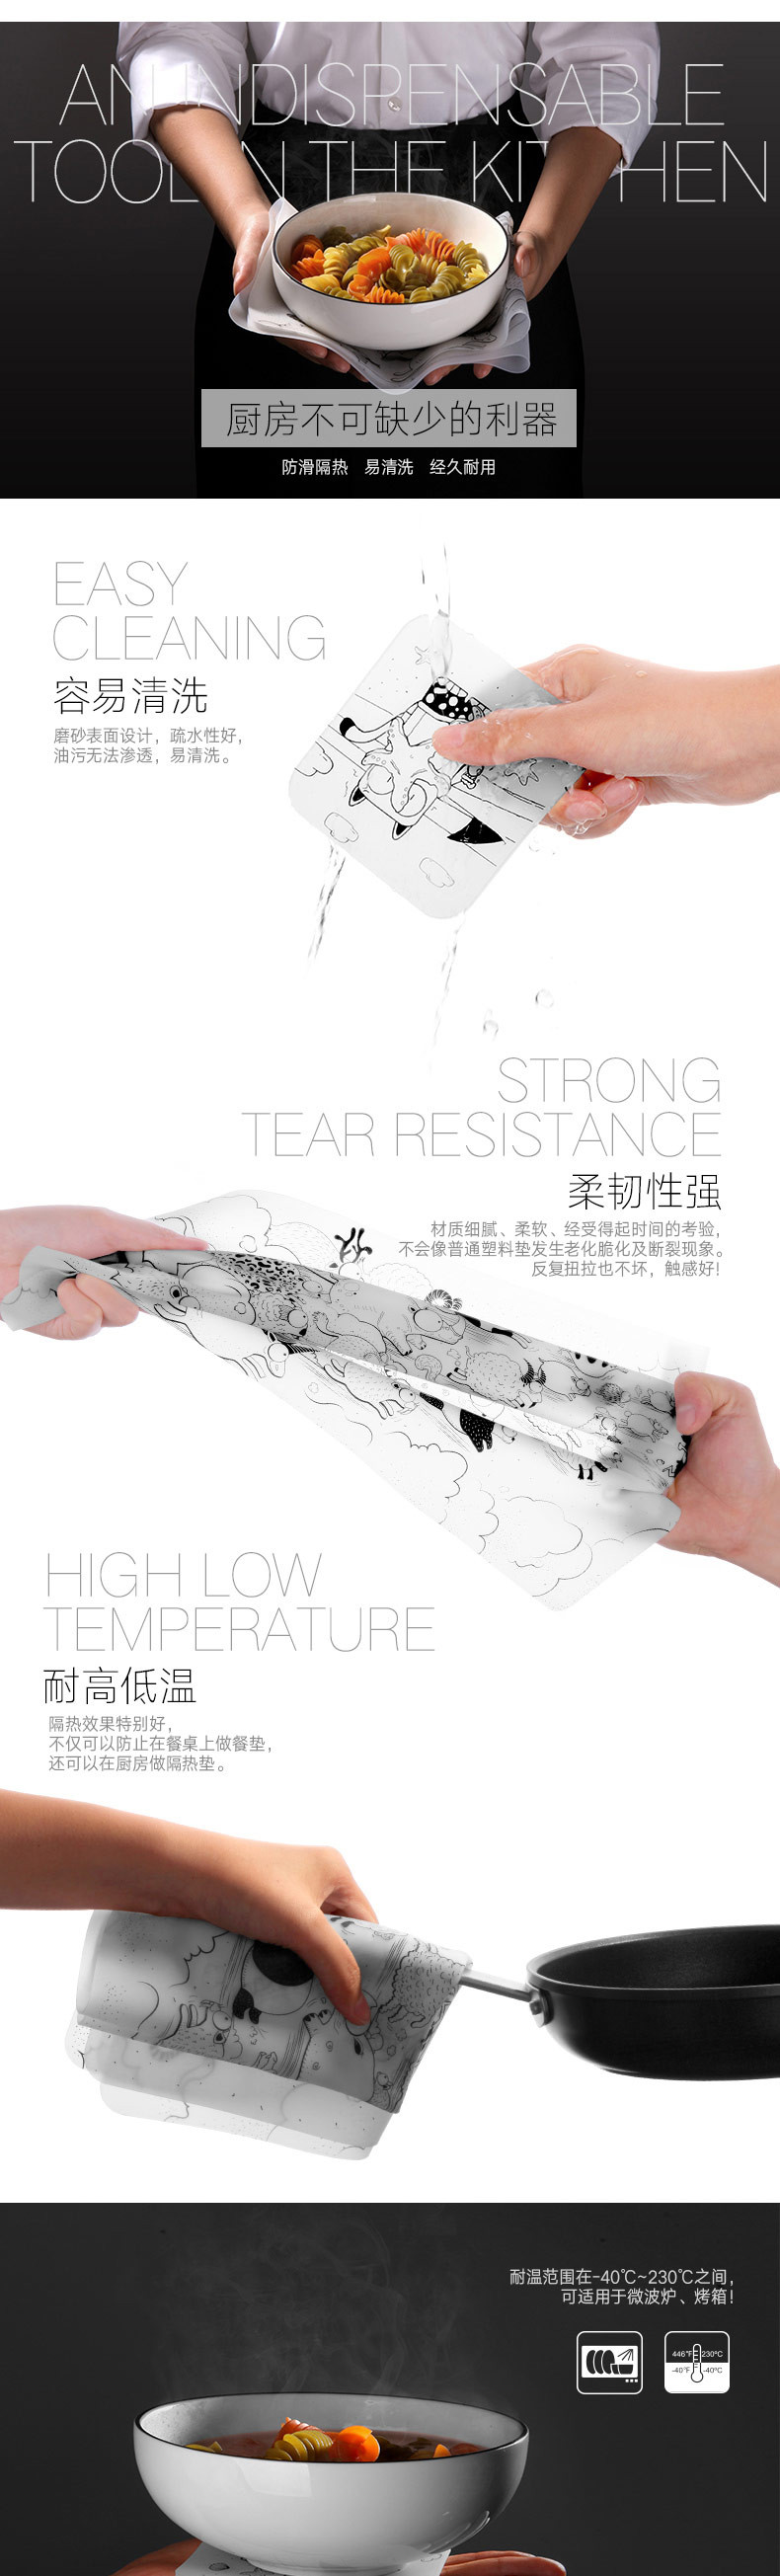 台湾Artiart创意小号餐垫-百兽图 灰色 KITC044E